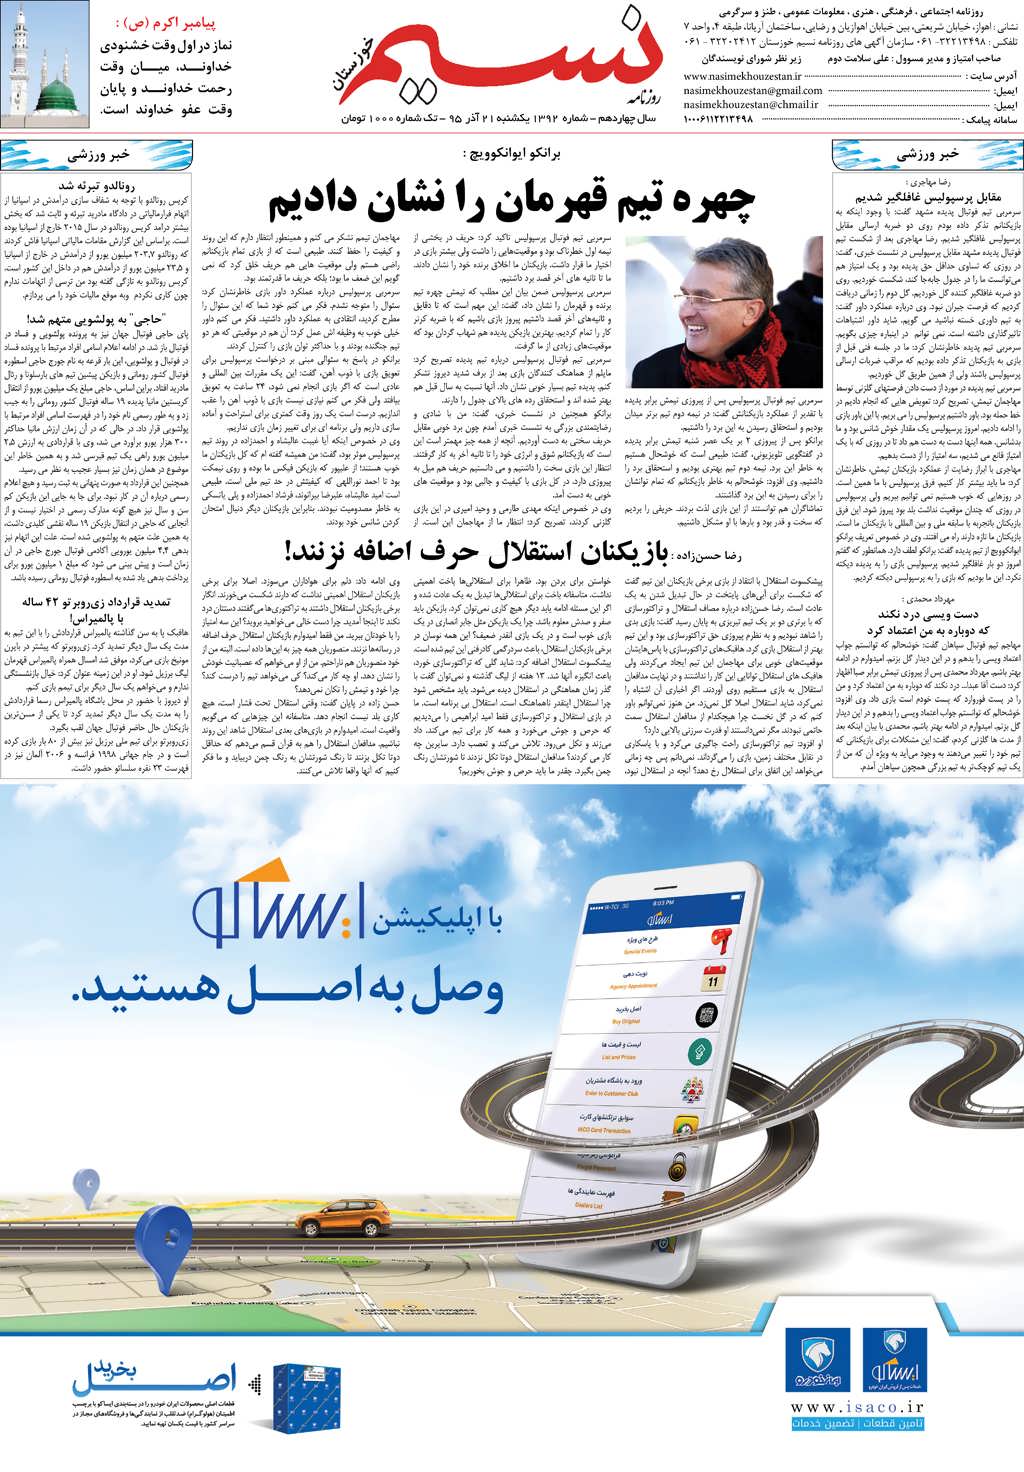 صفحه آخر روزنامه نسیم شماره 1392